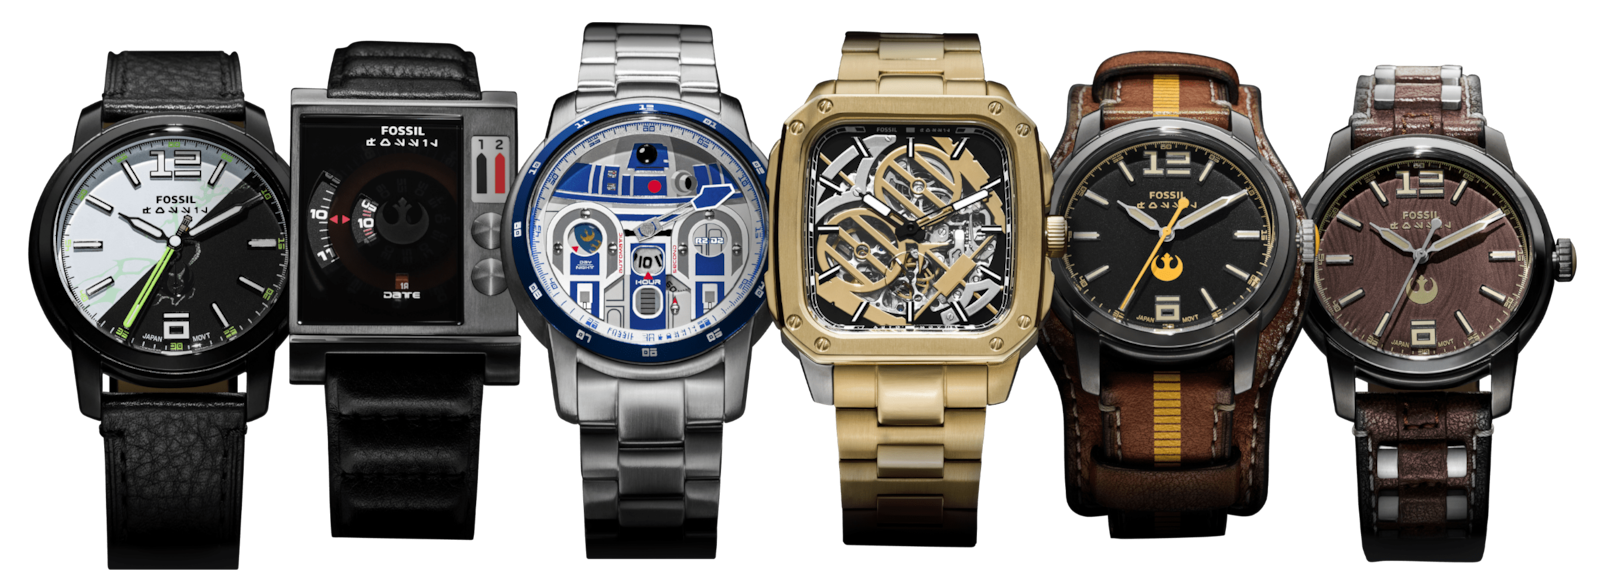 Uhren im Look von Luke Skywalker, Leia Organa, Han Solo, Chewbacca, C-3PO und R2-D2 in einer Reihe.